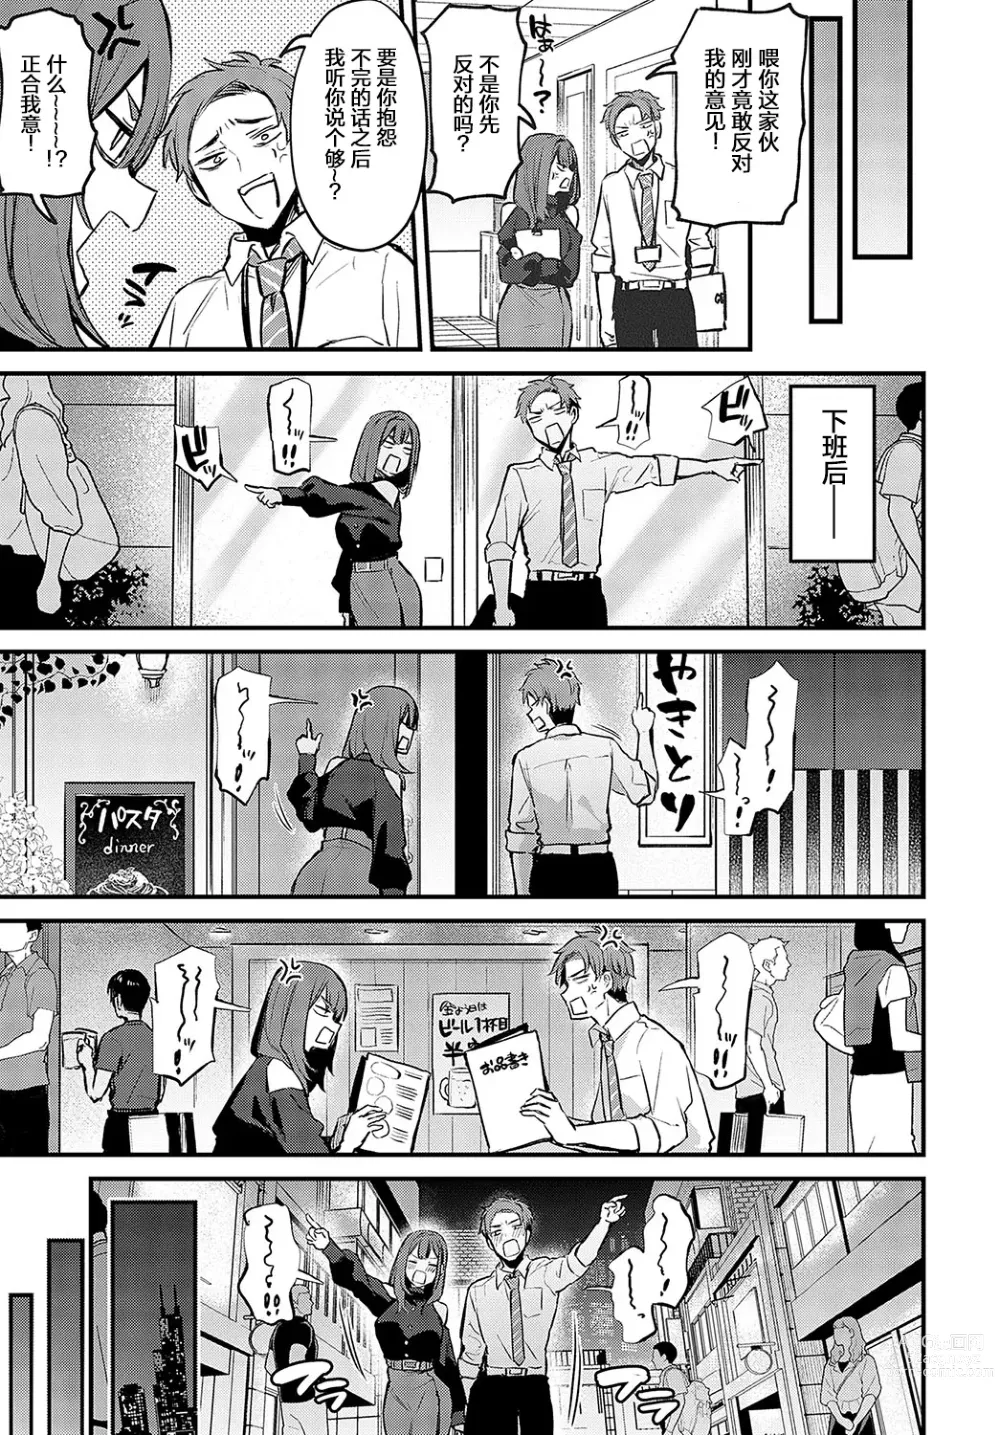 Page 5 of manga Mou Ichido, Shite Mitai. - I wana try it again.